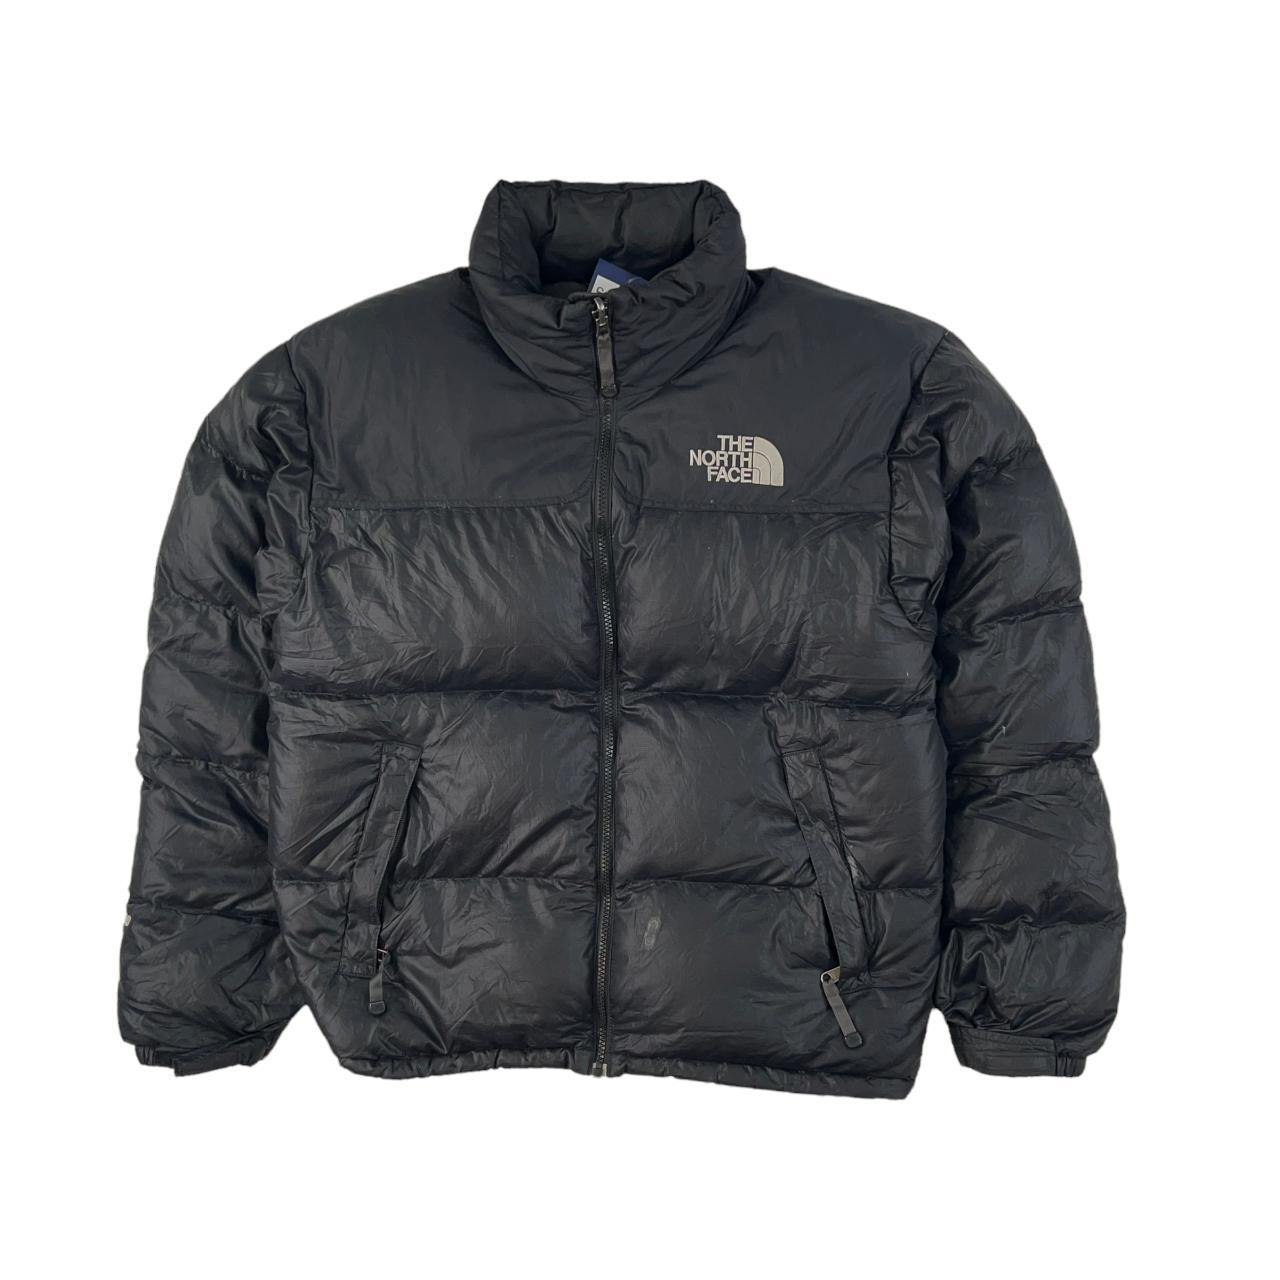 Vintage black North Face Nupste 700 Puffer Jacket... - Depop